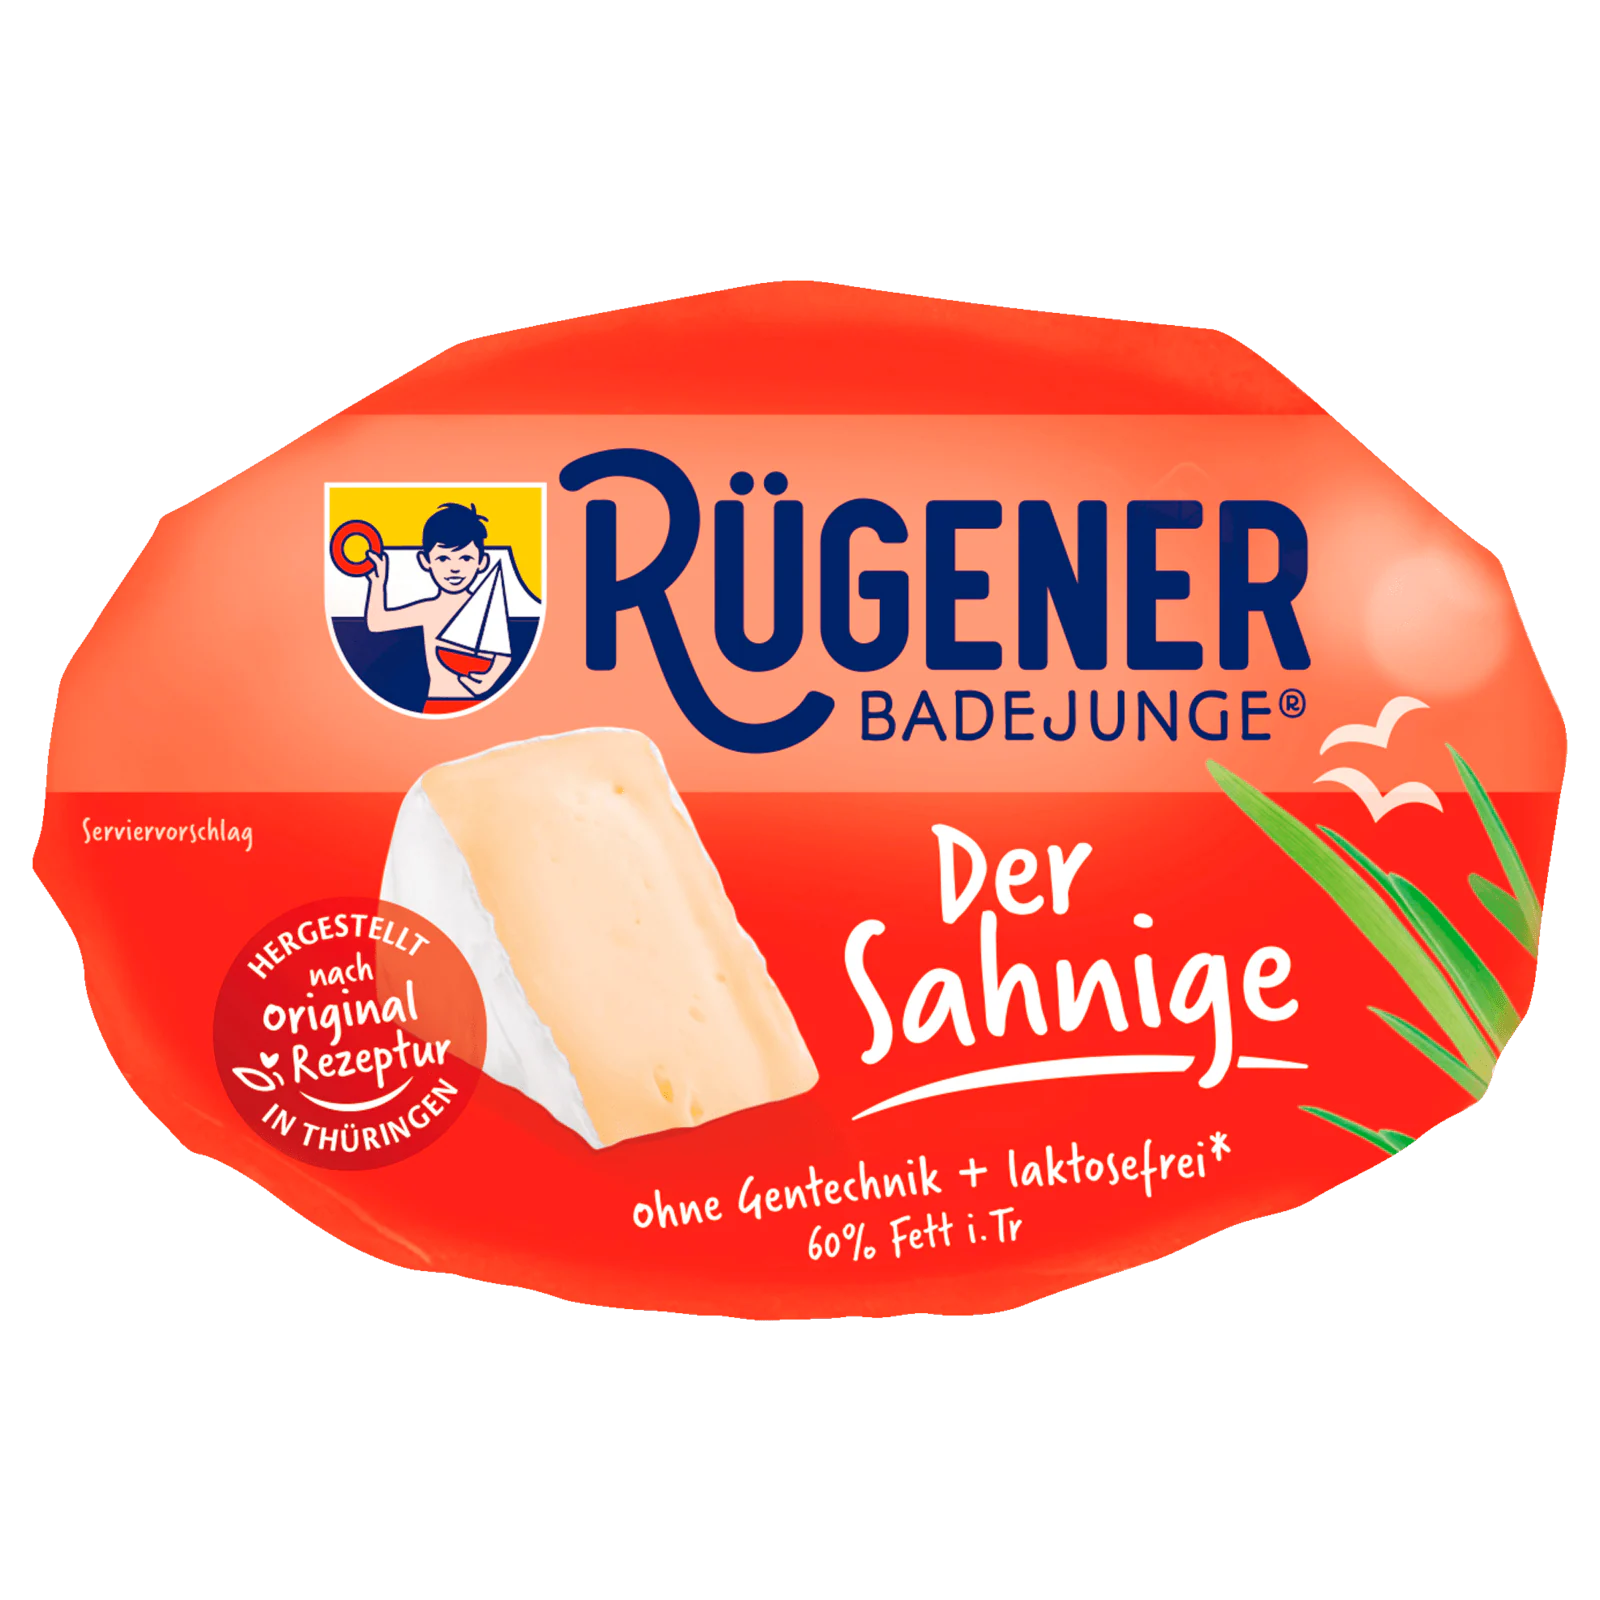 Rügener Badejunge Der Sahnige 150g bei REWE online bestellen!